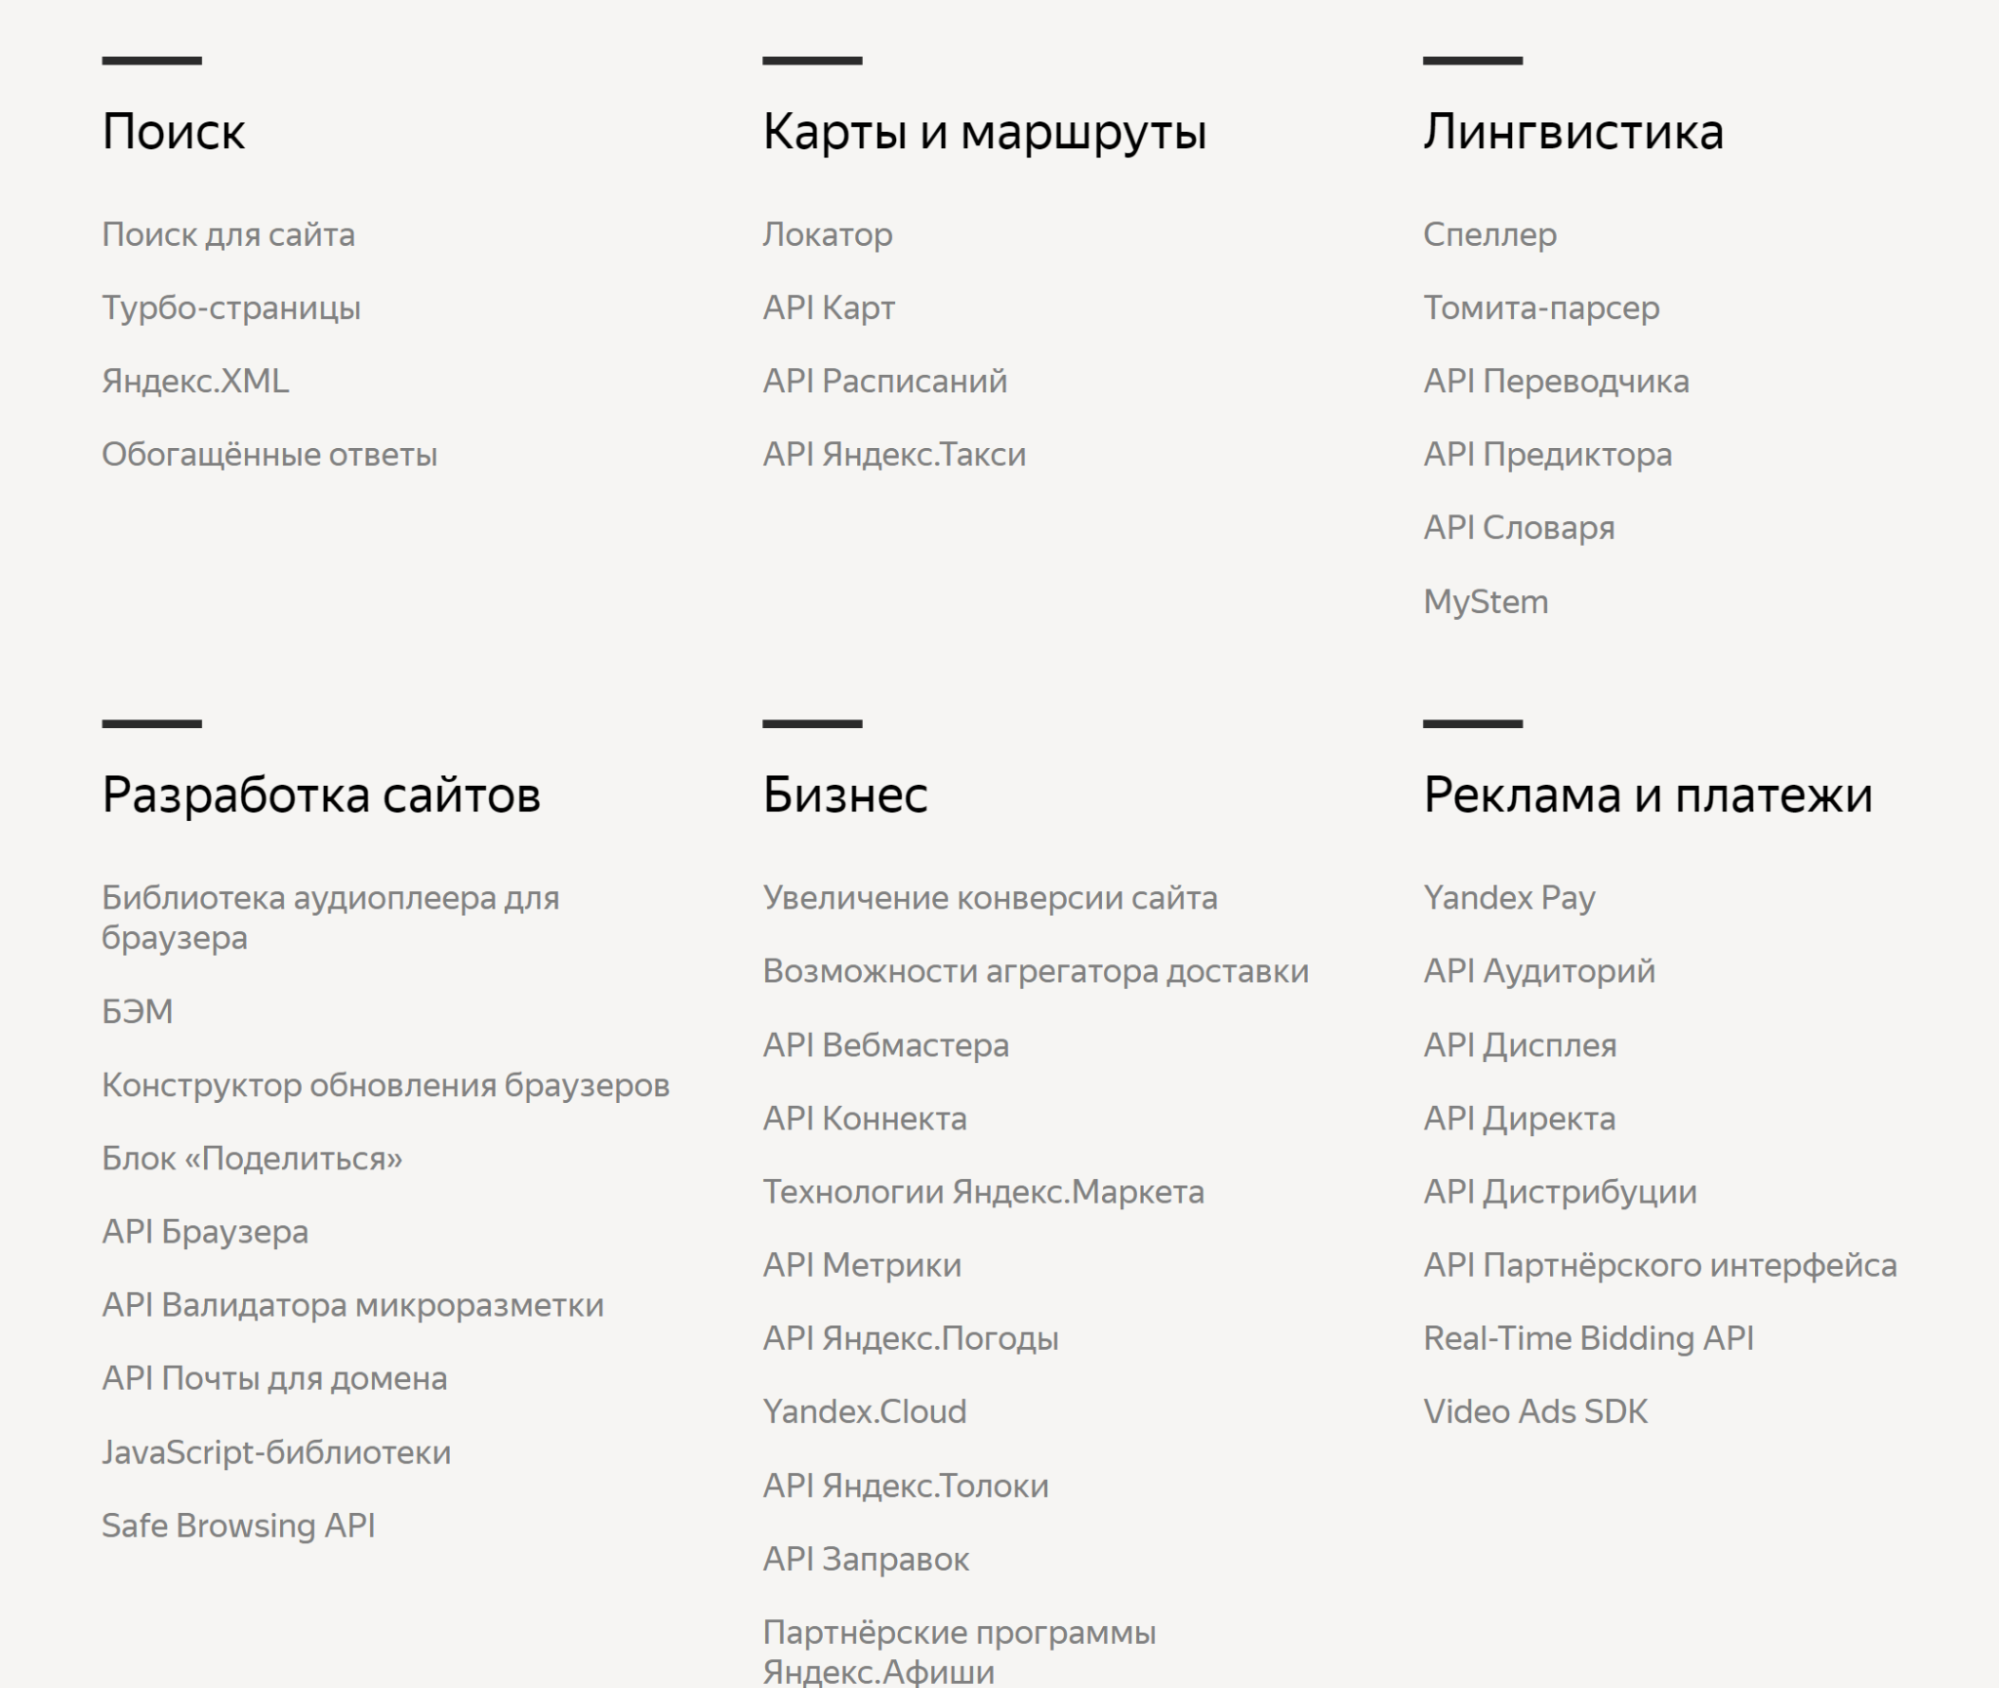 Пример API, которые предлагает разработчикам «Яндекс»